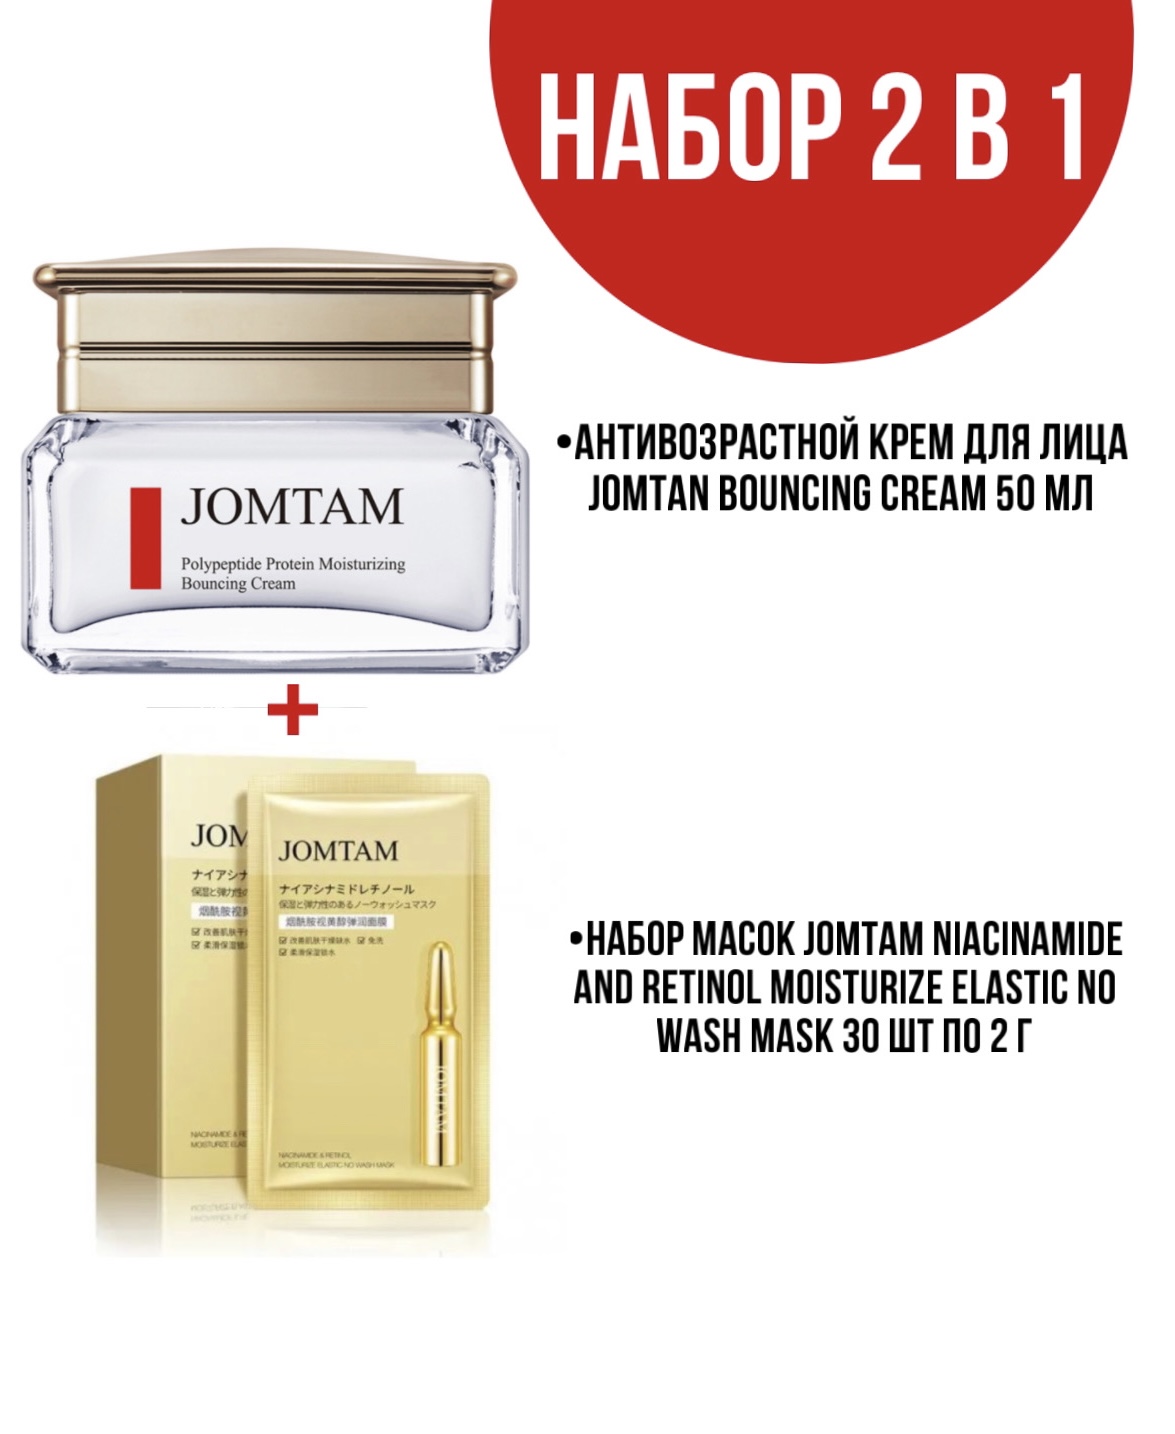 Крем Jomtam Bouncing Cream для лица 50 мл и набор масок Jomtam Niacinamide 30 шт по 2 г